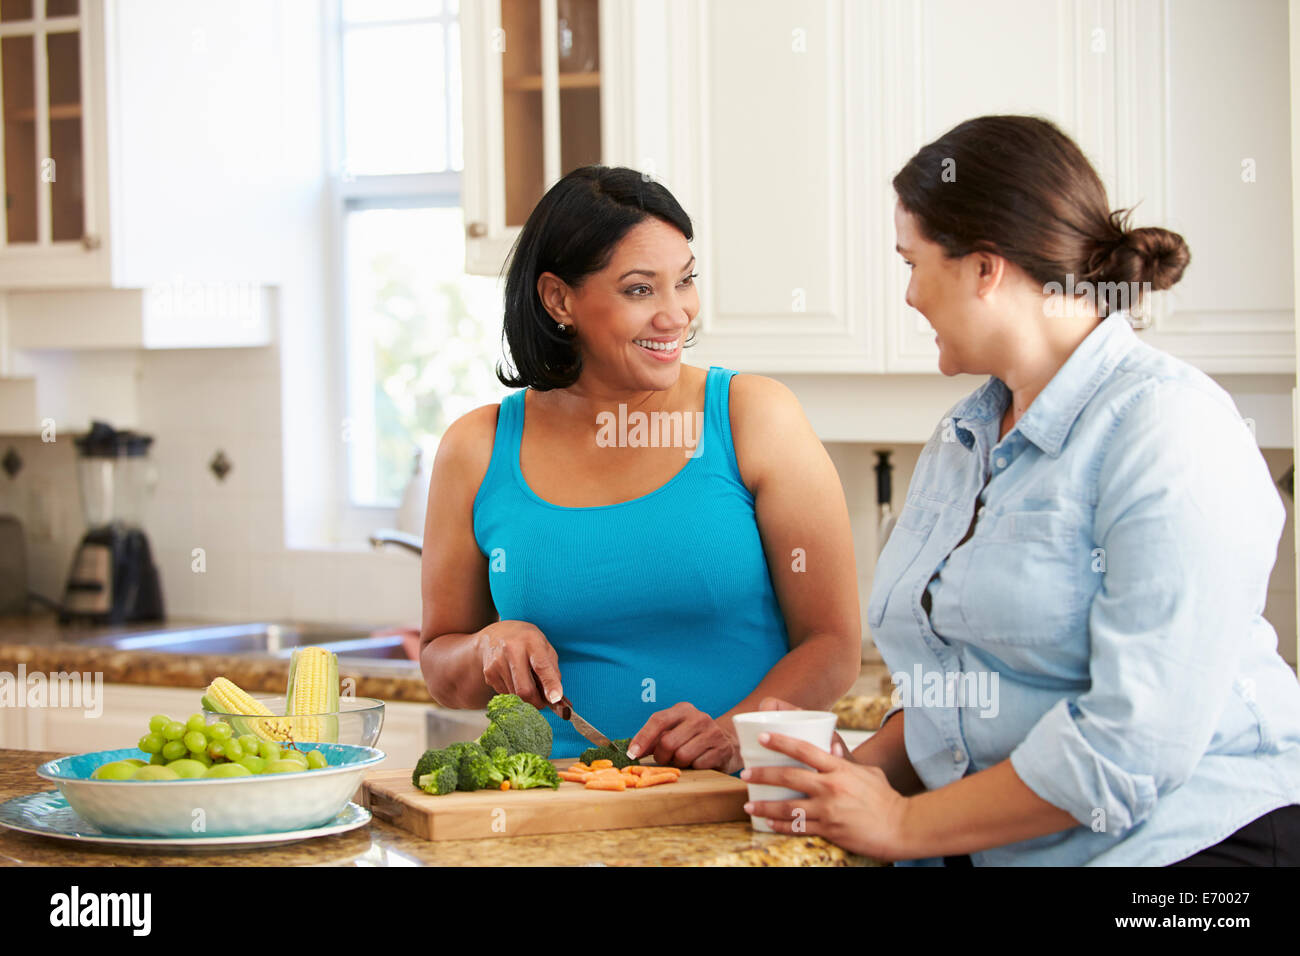 Deux femmes en surpoids sur l'alimentation La préparation de légumes dans la cuisine Banque D'Images